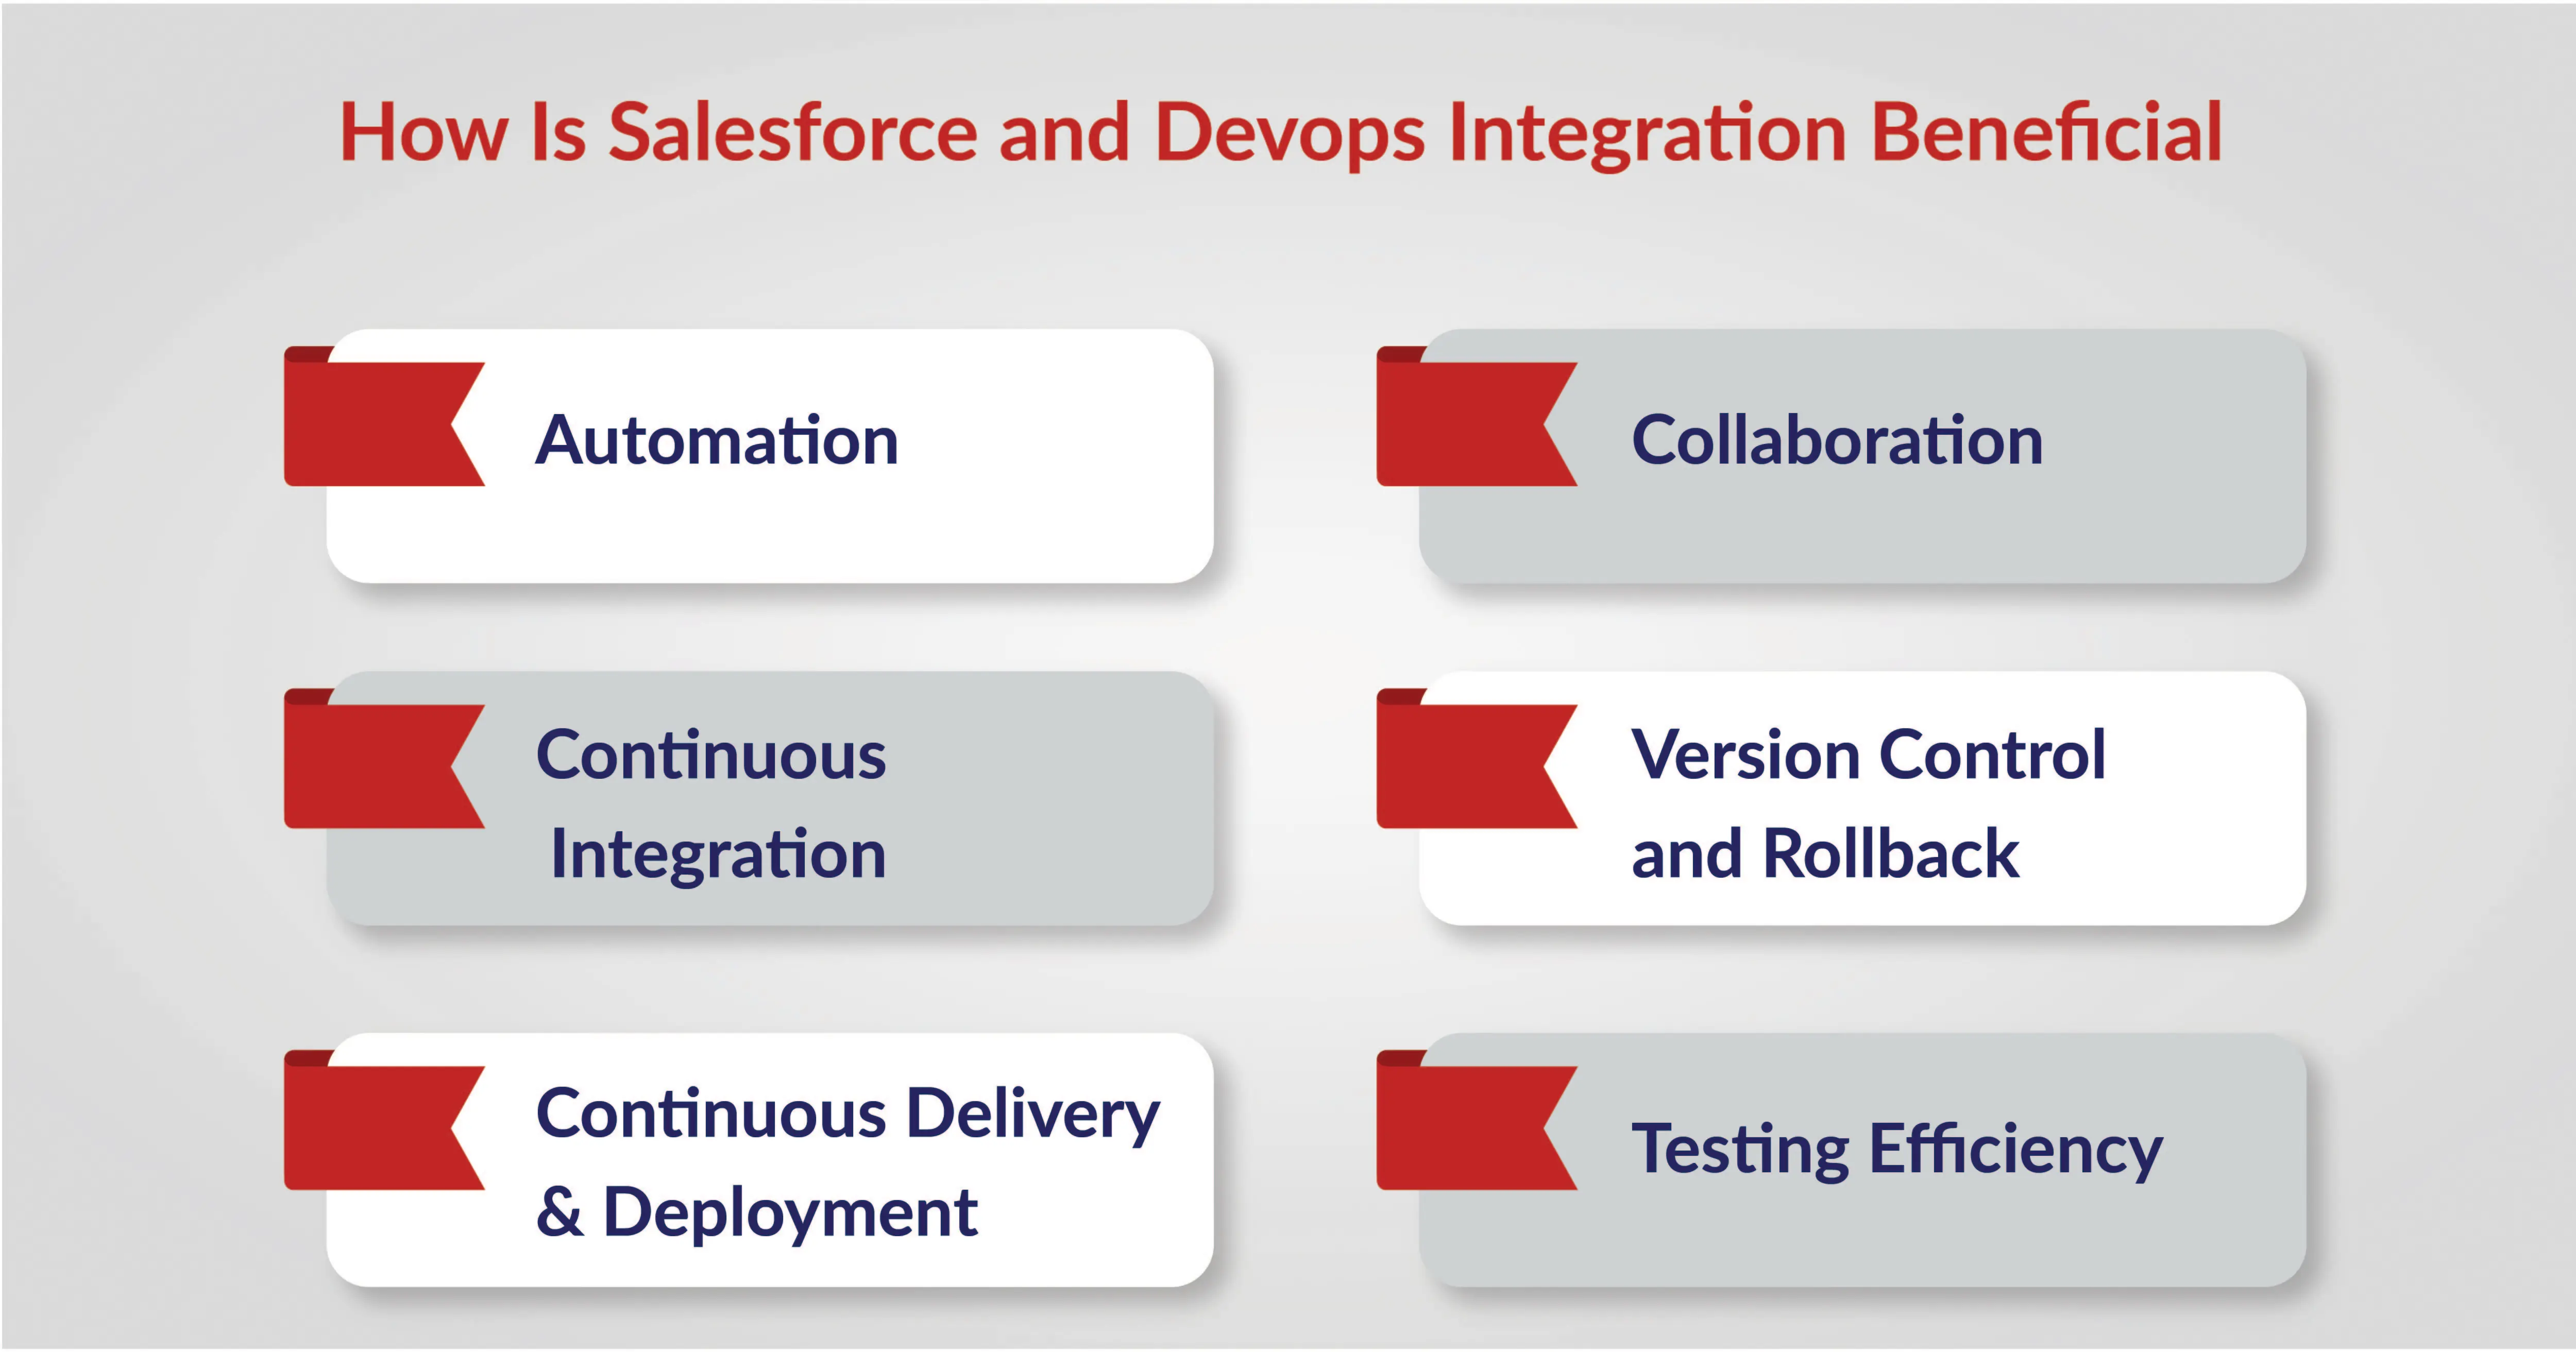 Benefits of Salesforce and DevOps Integration